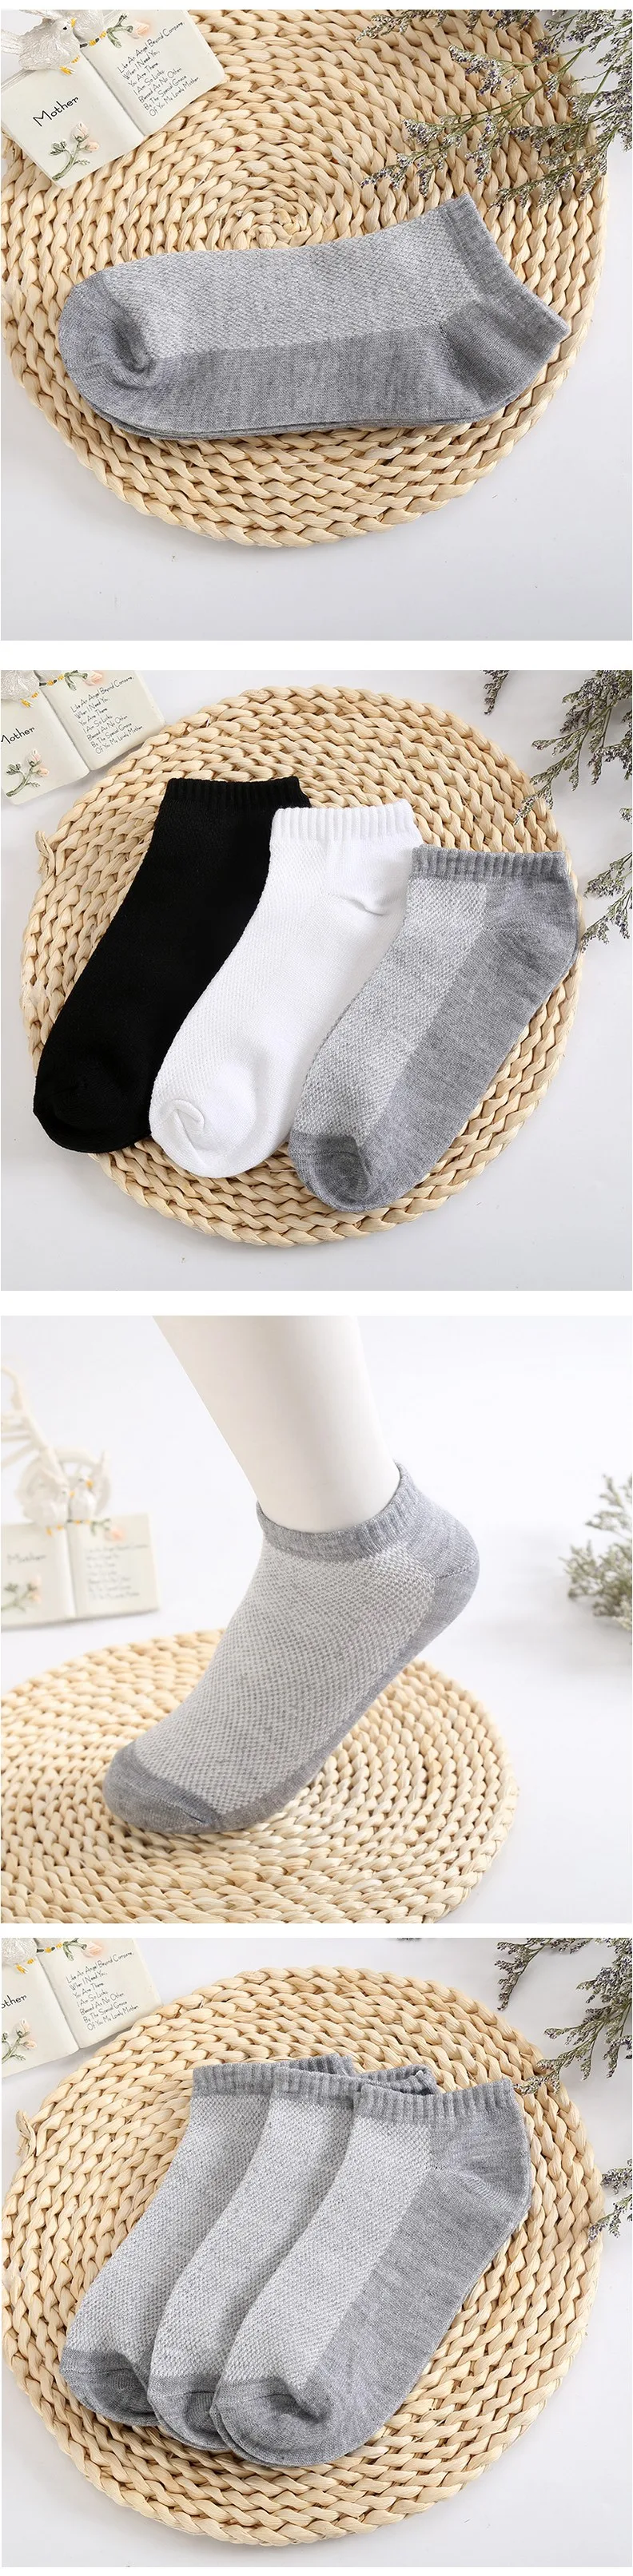 Для весны и лета, мужские носки лодочкой в сеточку, дышащие, тонкие, носки по щиколотку, мужские черные и белые носки- тапочки, 20 шт.=10 пар/набор